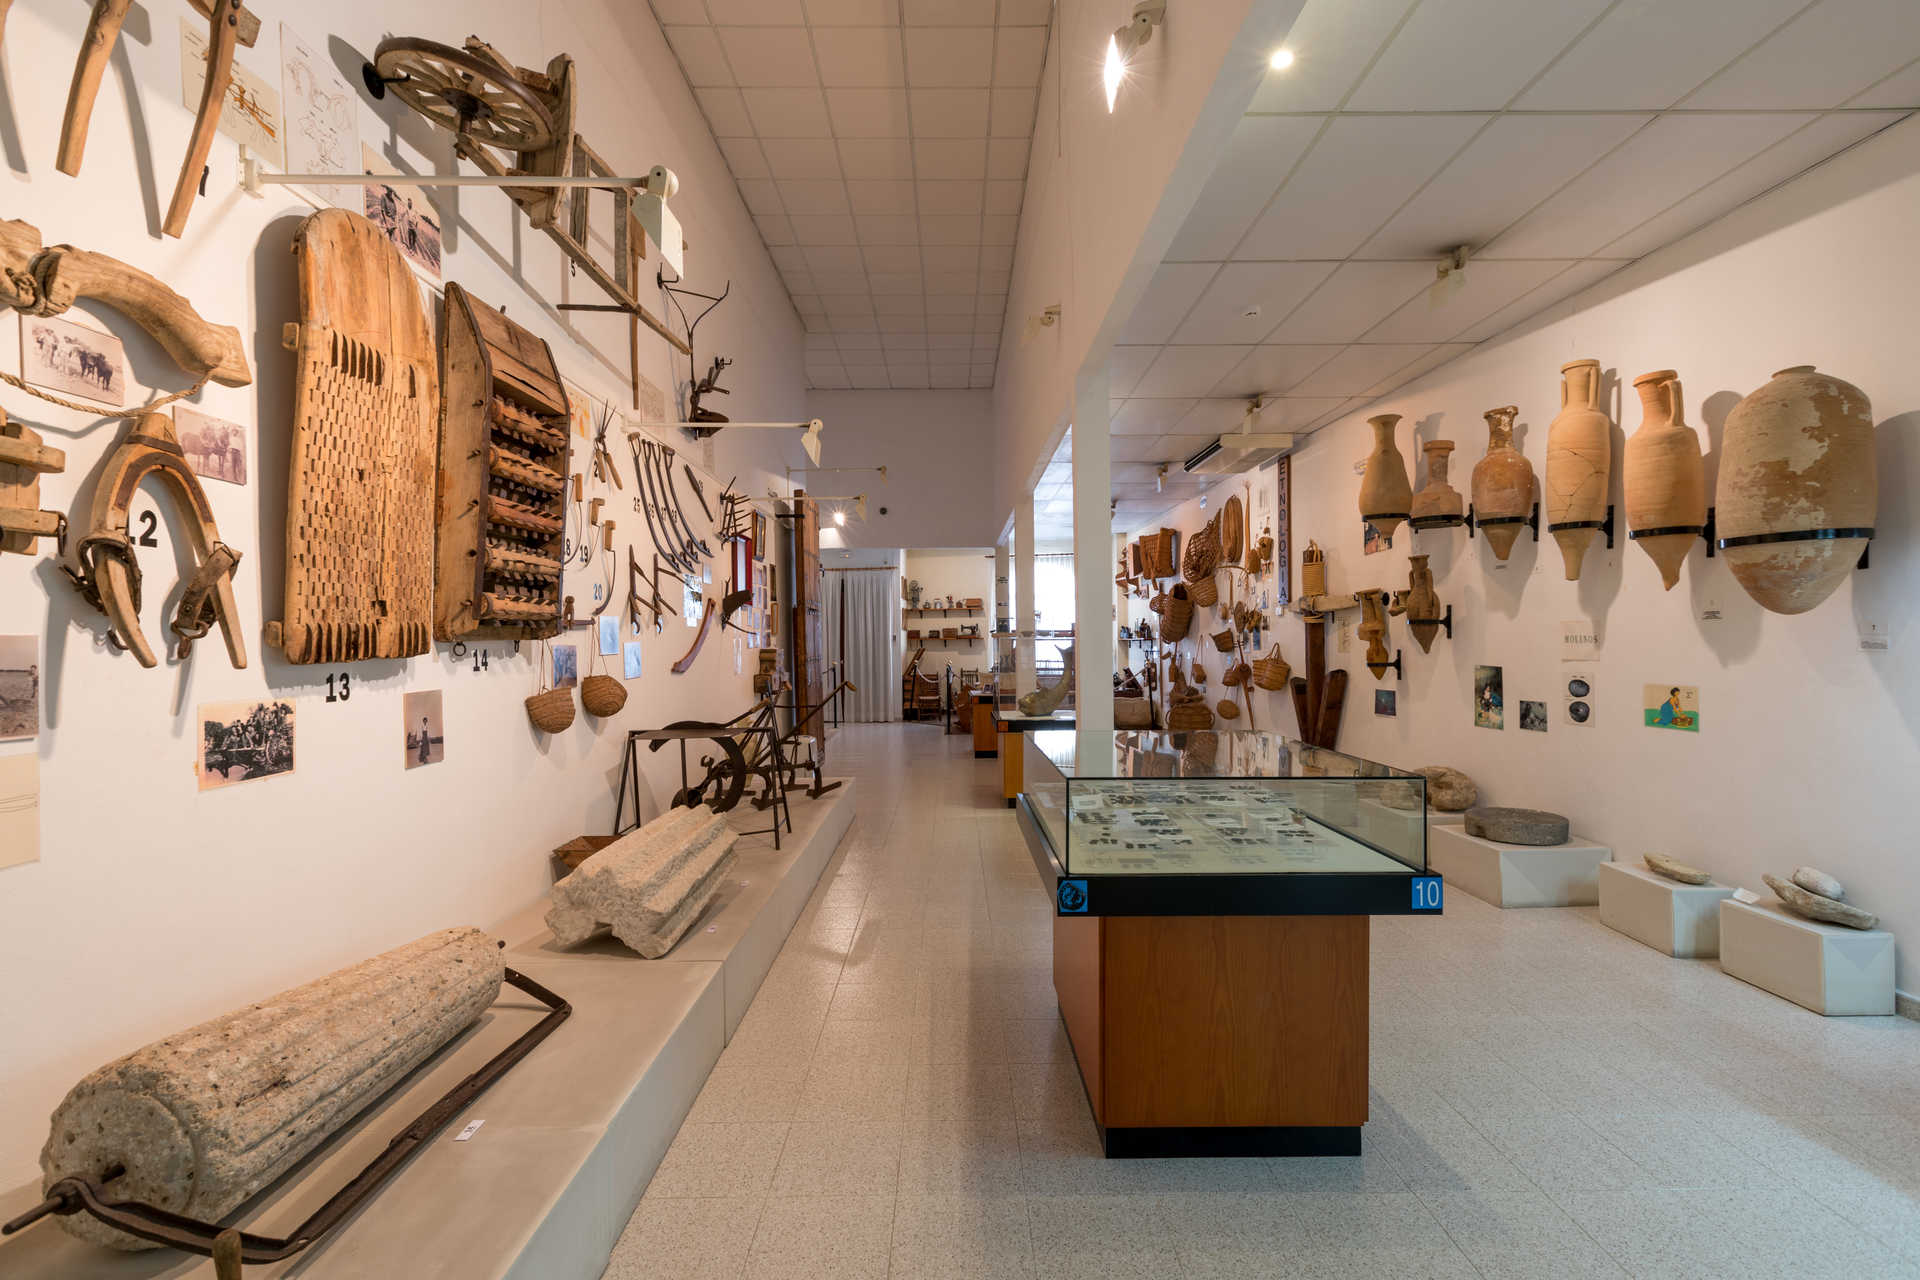 Museu Arqueològic-Etnològic